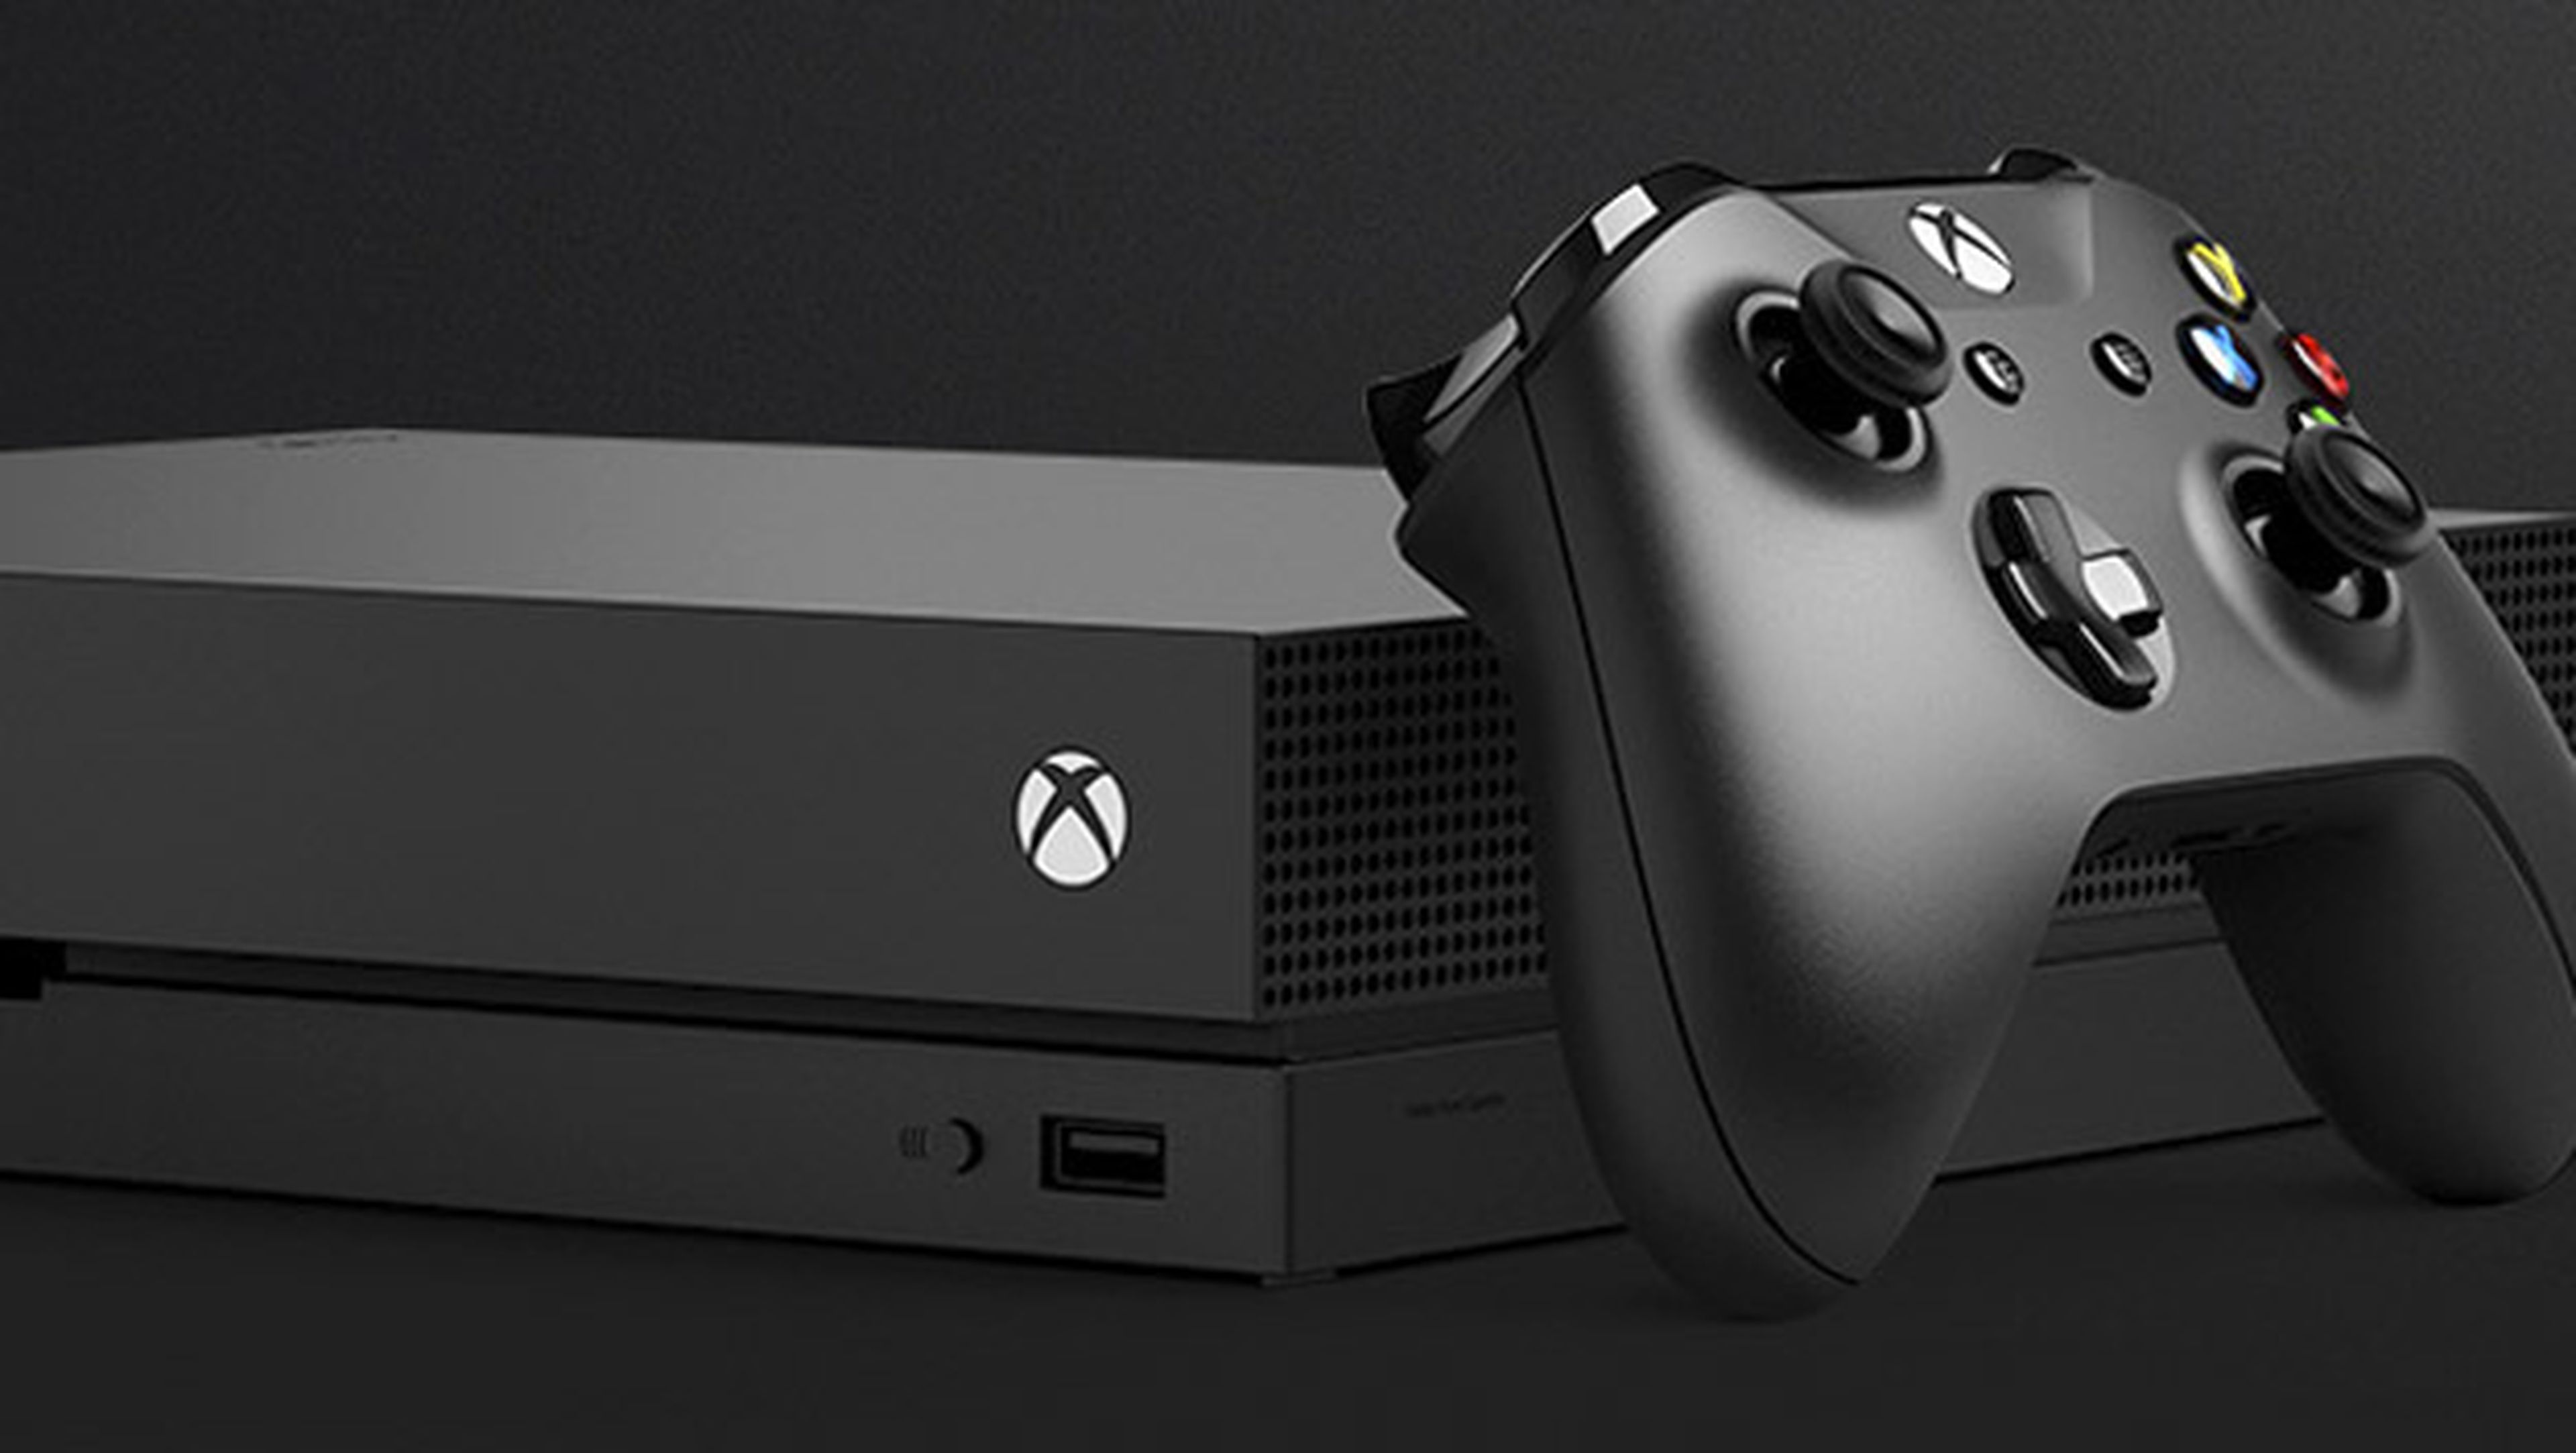 puramente nada elegante Análisis de Xbox One X, la consola más potente con 4K y HDR | Computer Hoy